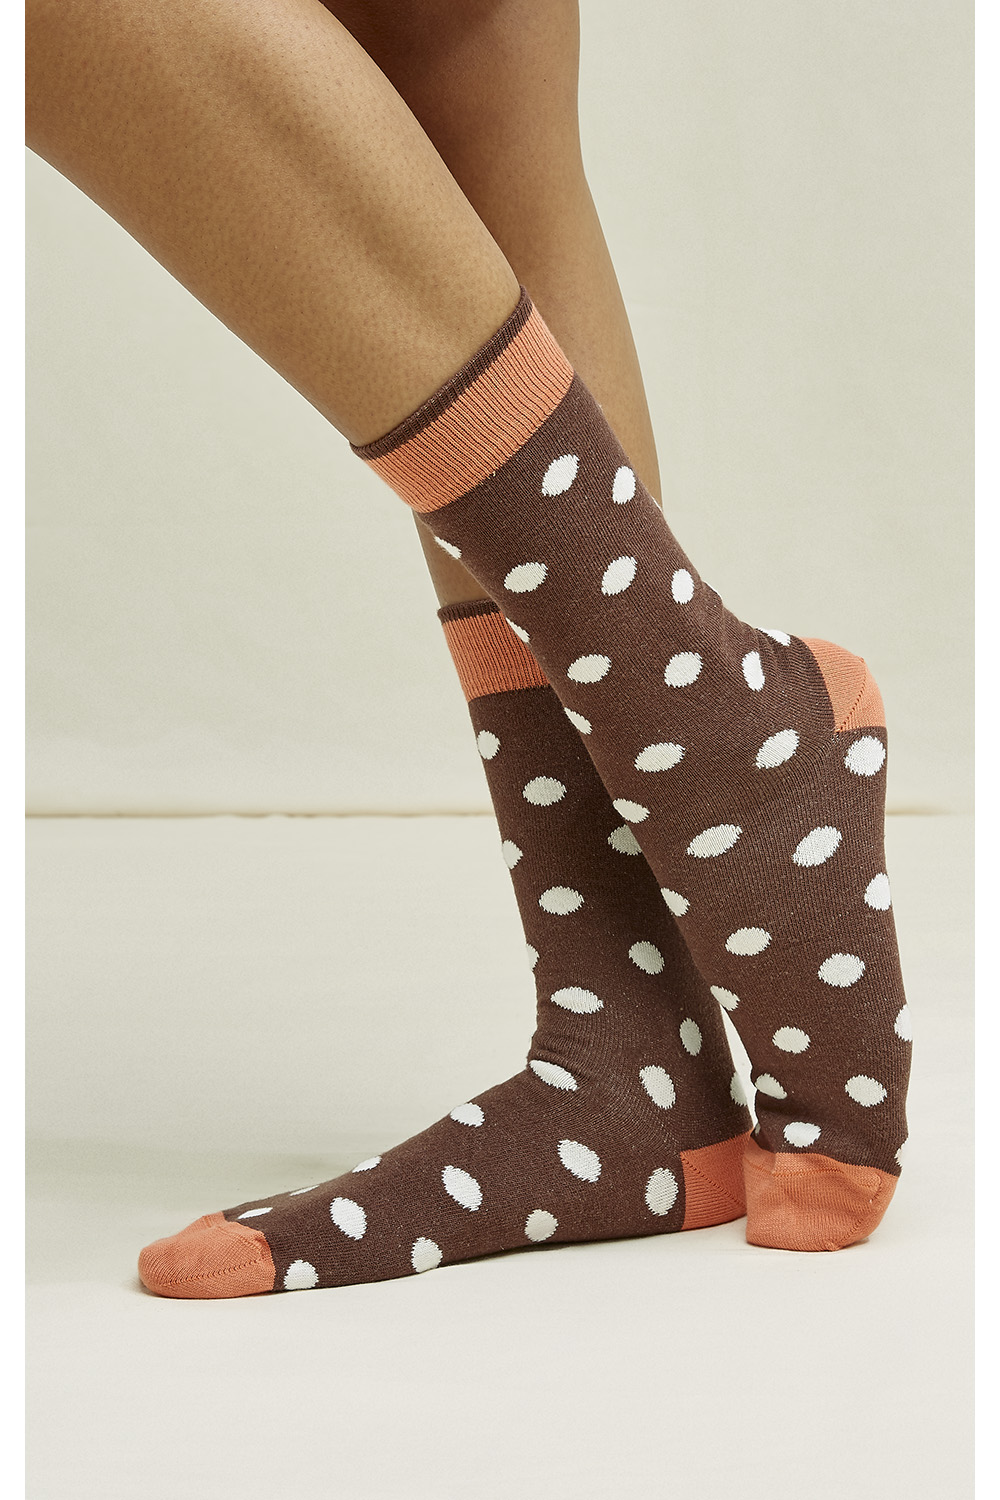 Brown Patterned Socks Set of 3 in brown multi 39/42